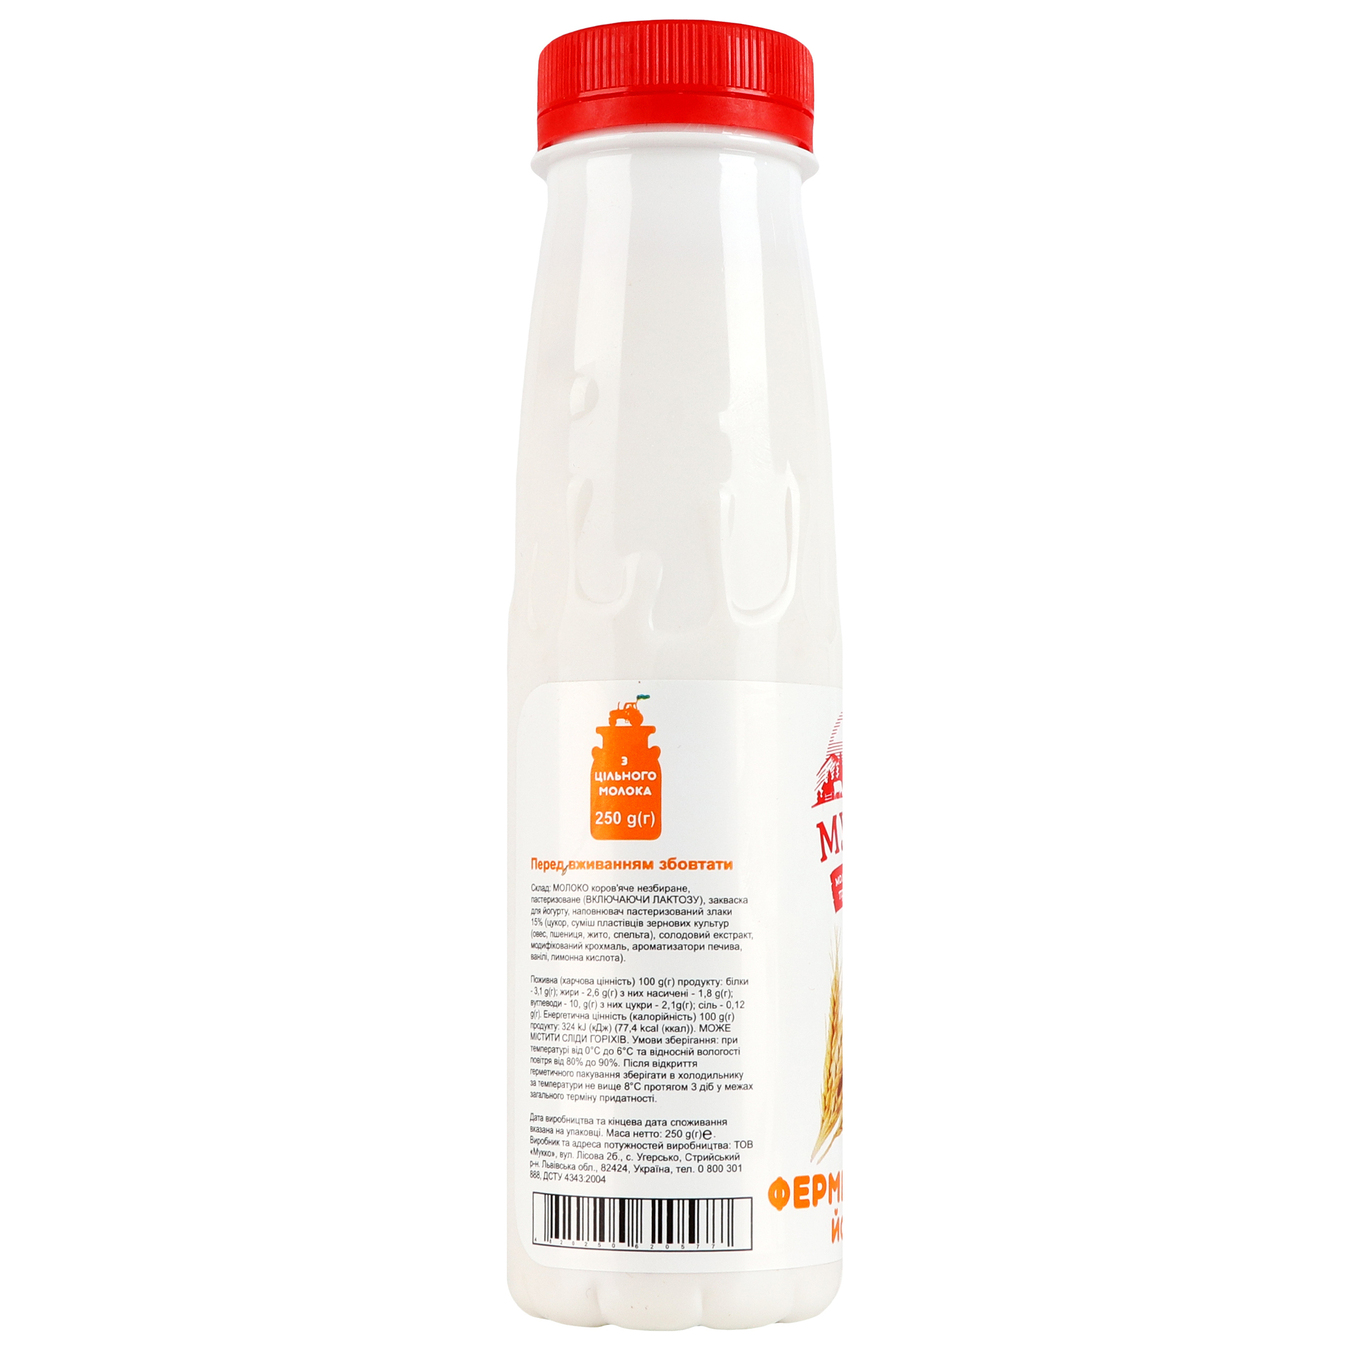 Yogurt Mukko cereals 2.6% 250g bottle 4